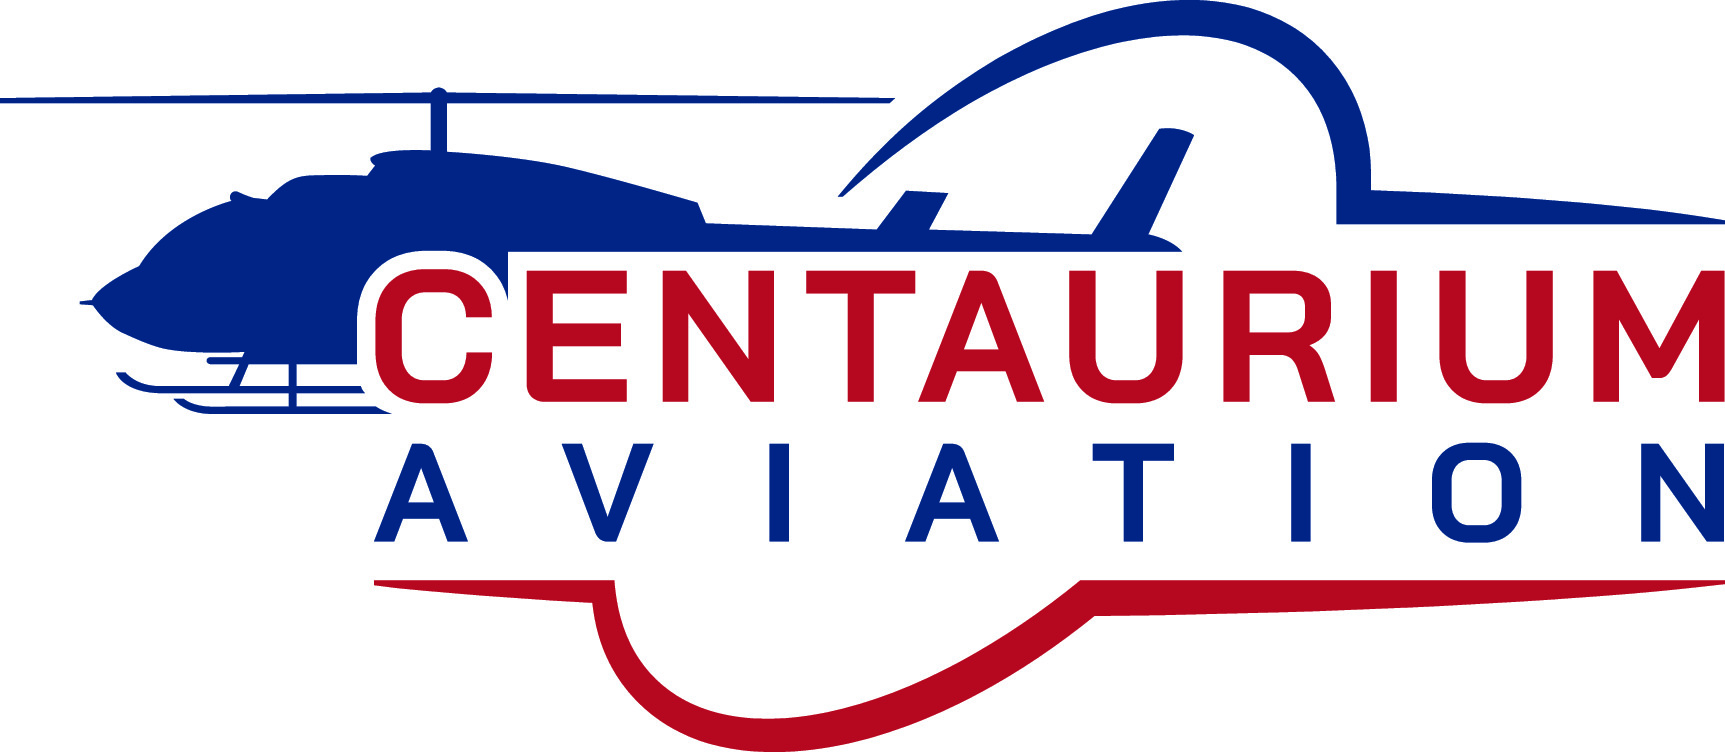 Centaurium Aviation Ltd